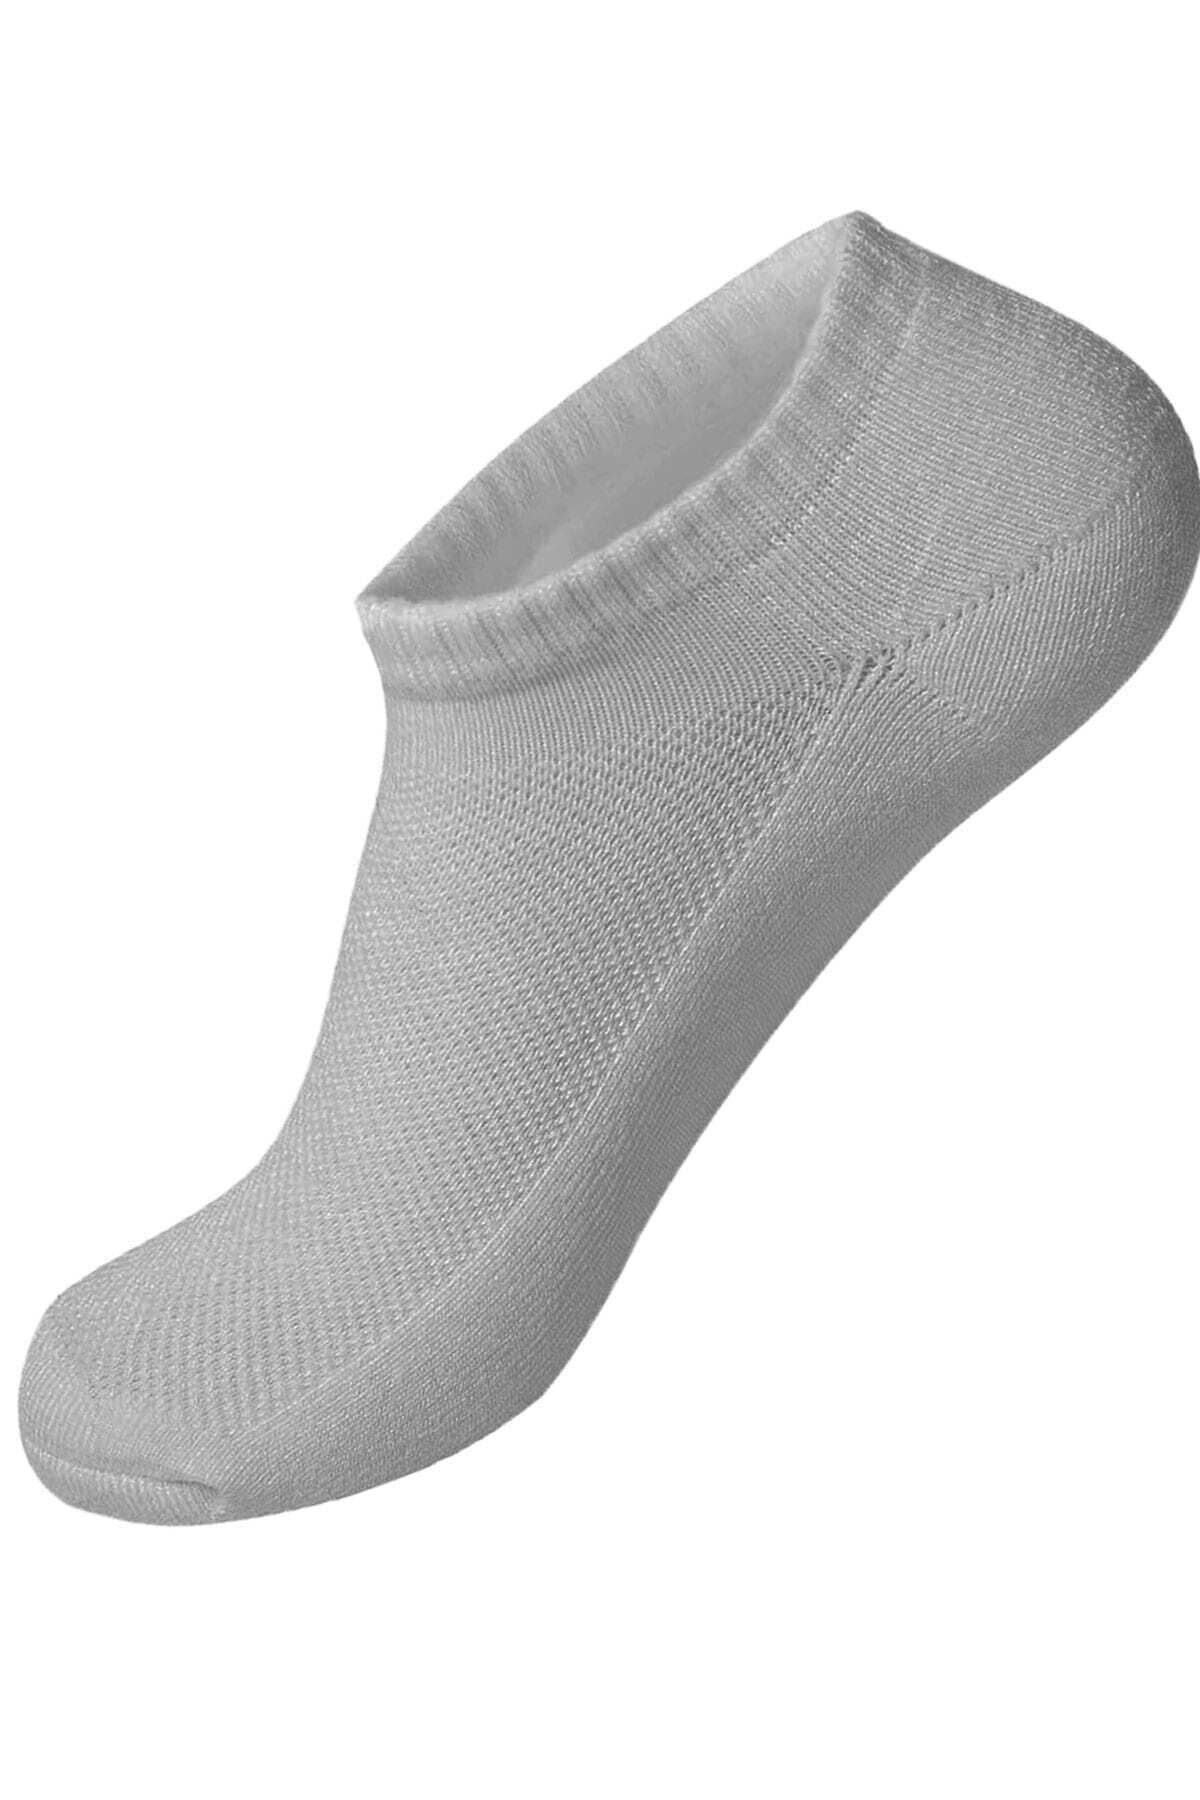 Pars Unısex 6'lı Sporcular Için Uygun Burun Kısmı Dikişsiz %80 Pamuk Snekars Çorap